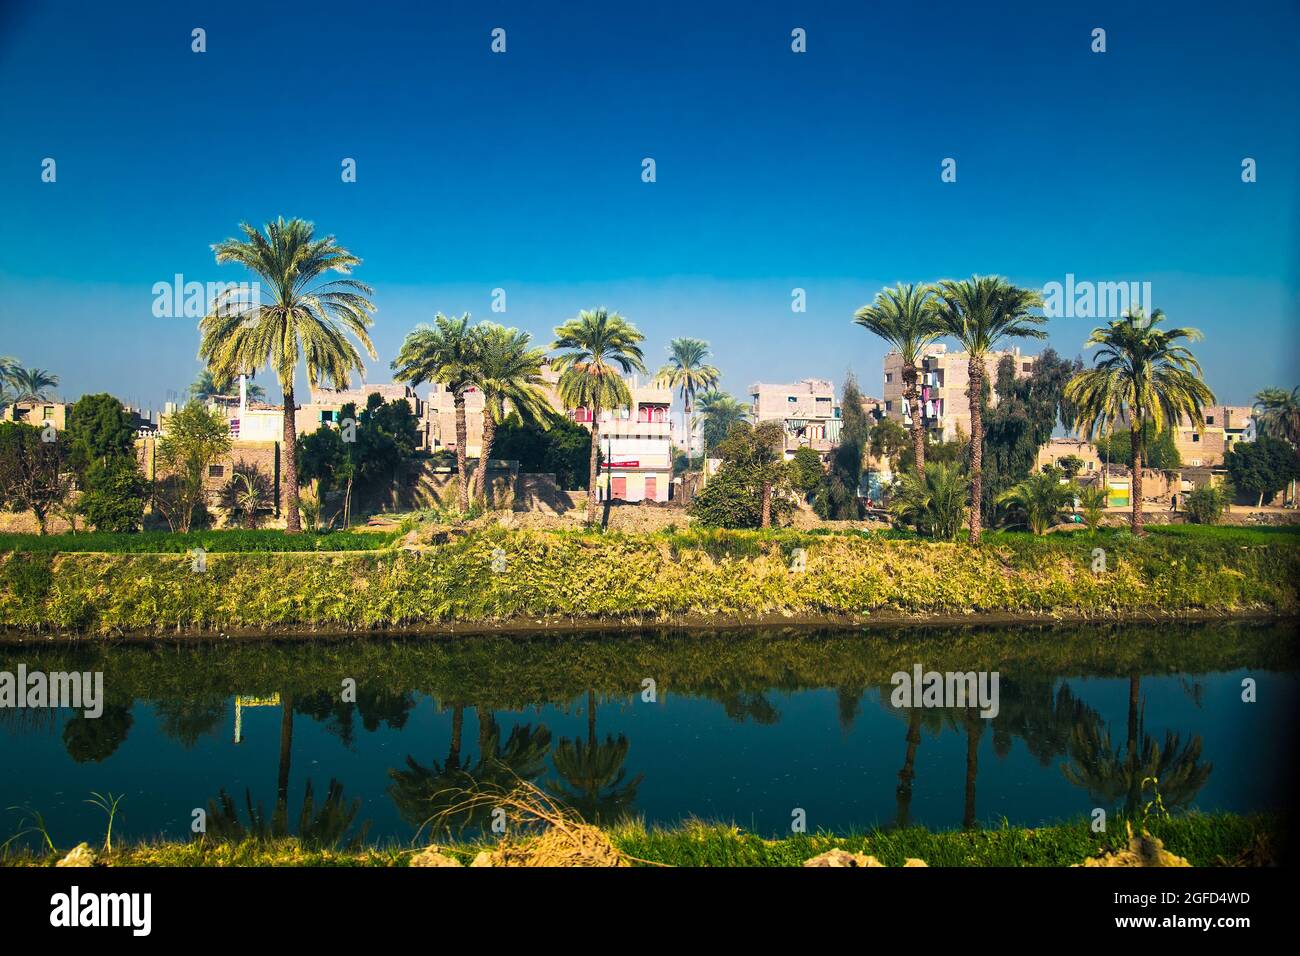 Palmen und Wohngebäude in der Nähe des Bewässerungskanals im Niltal. Ägypten. Stockfoto